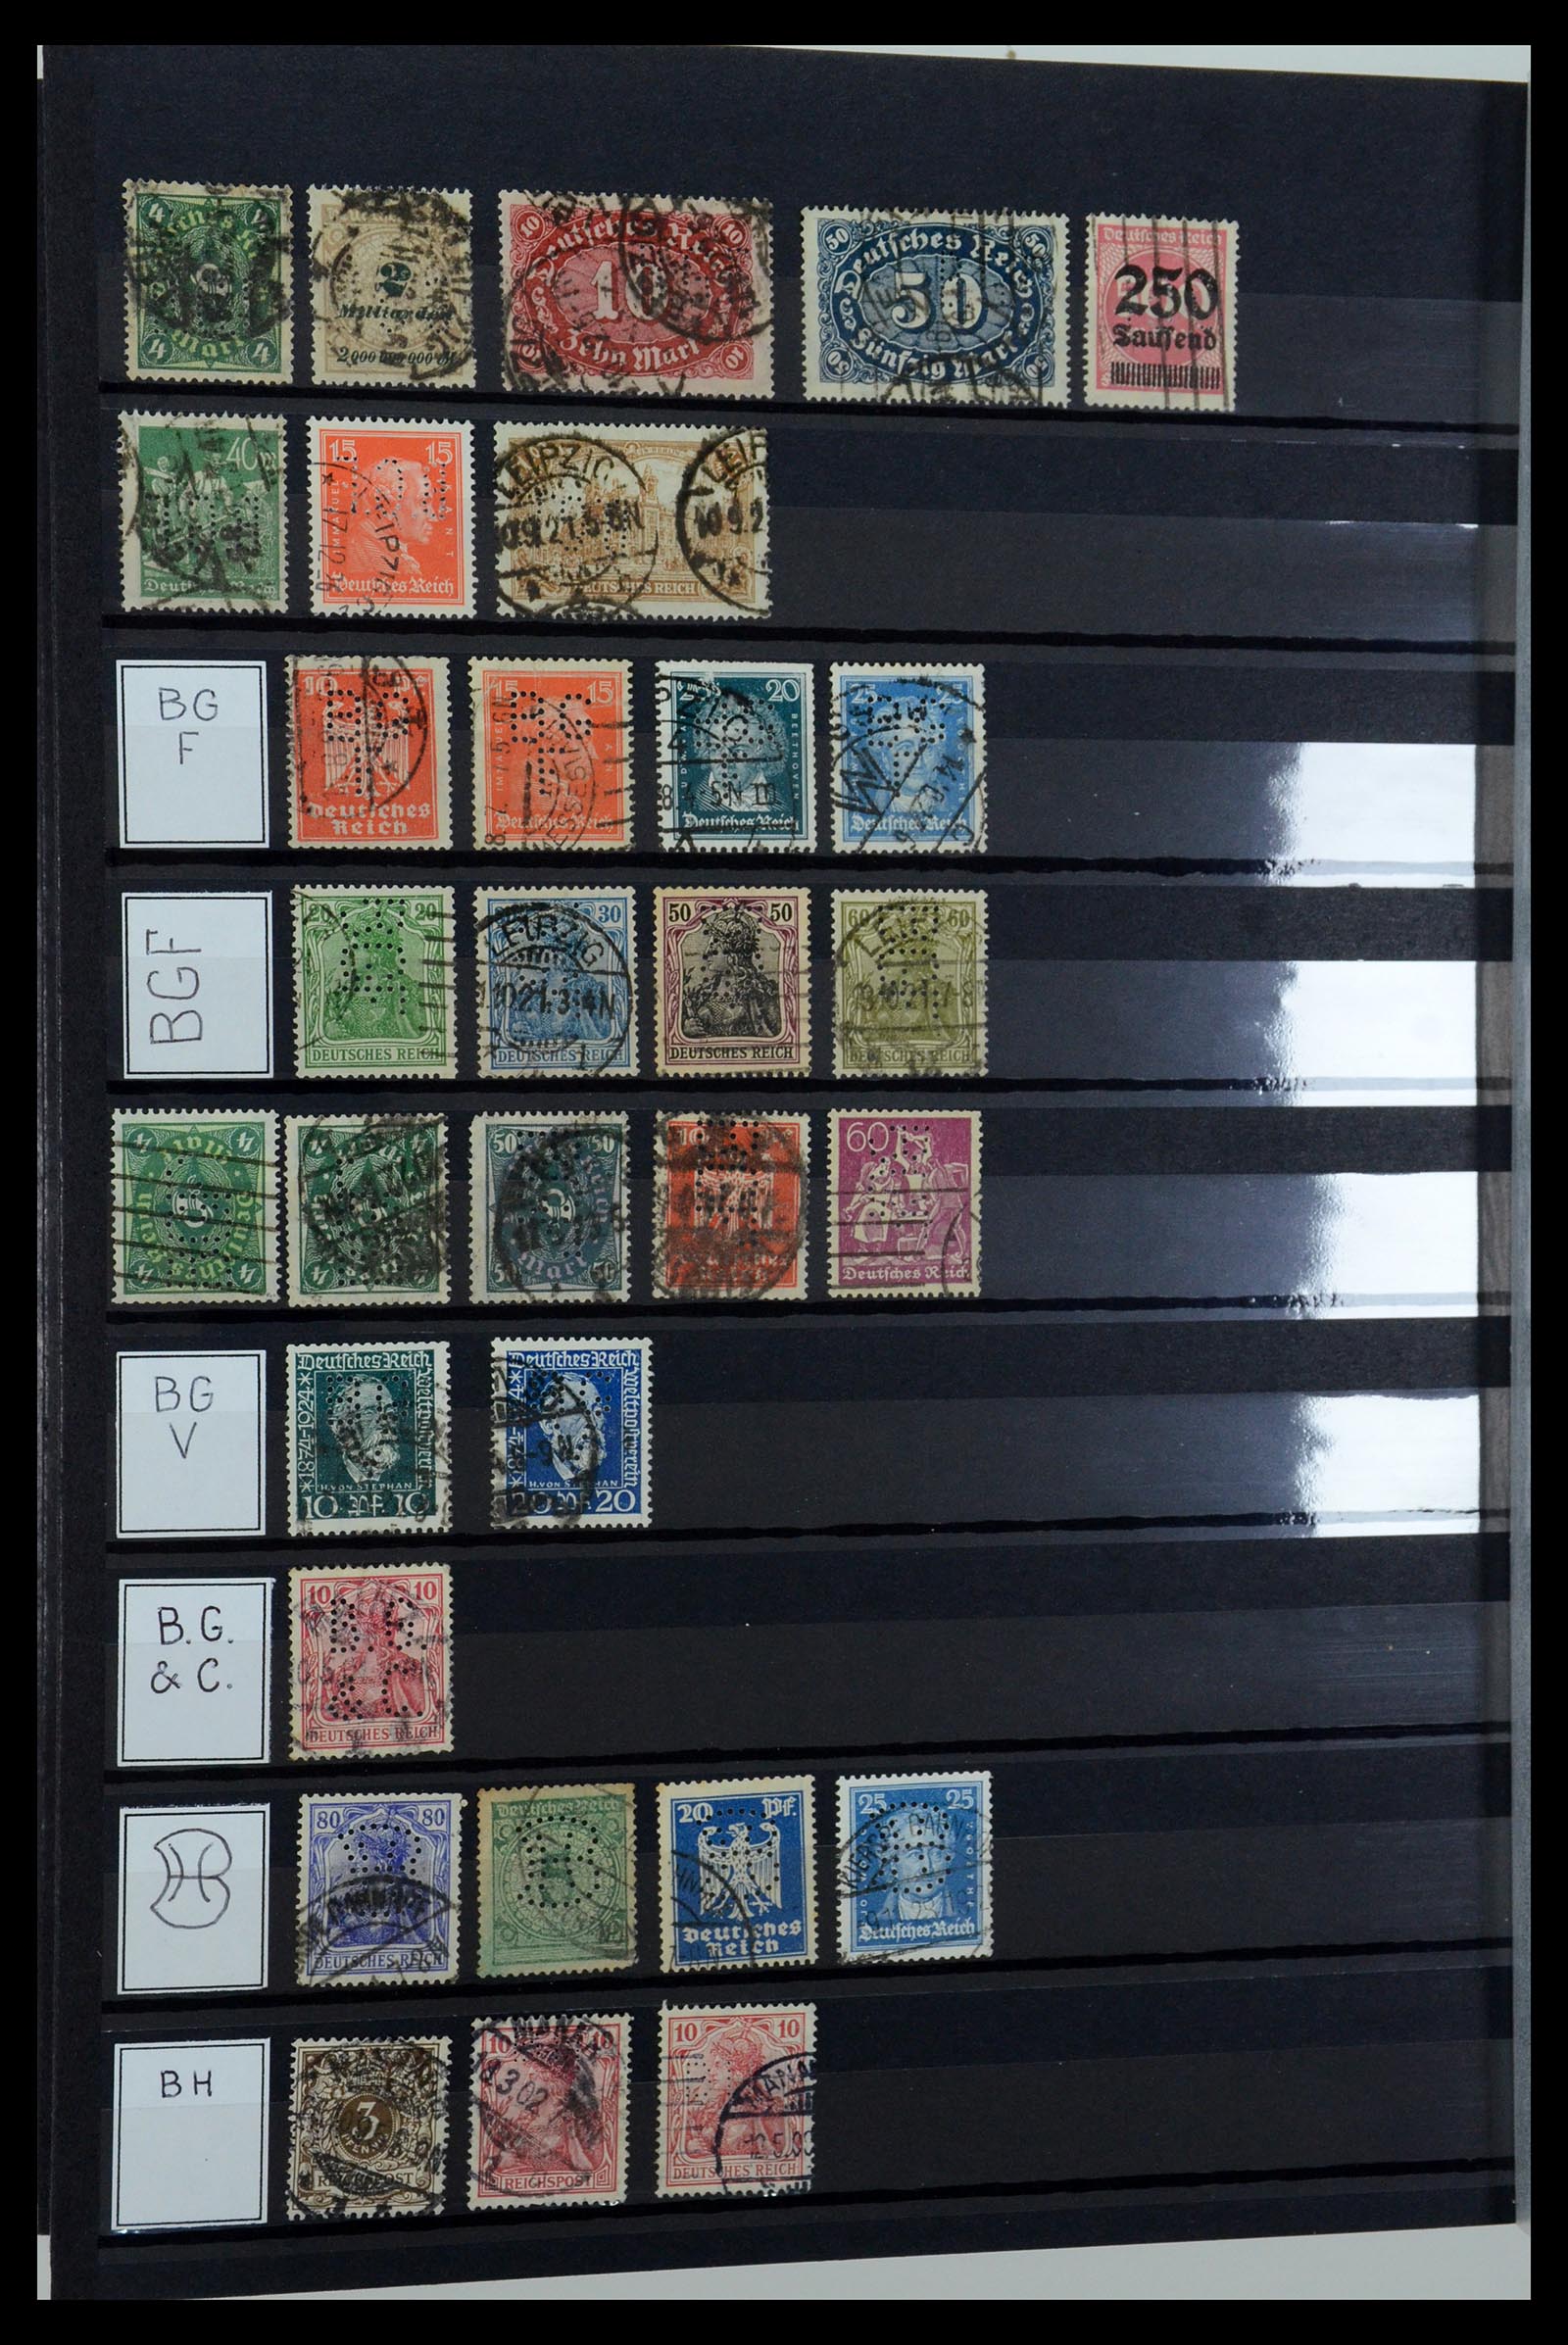 36405 041 - Stamp collection 36405 German Reich perfins 1880-1945.